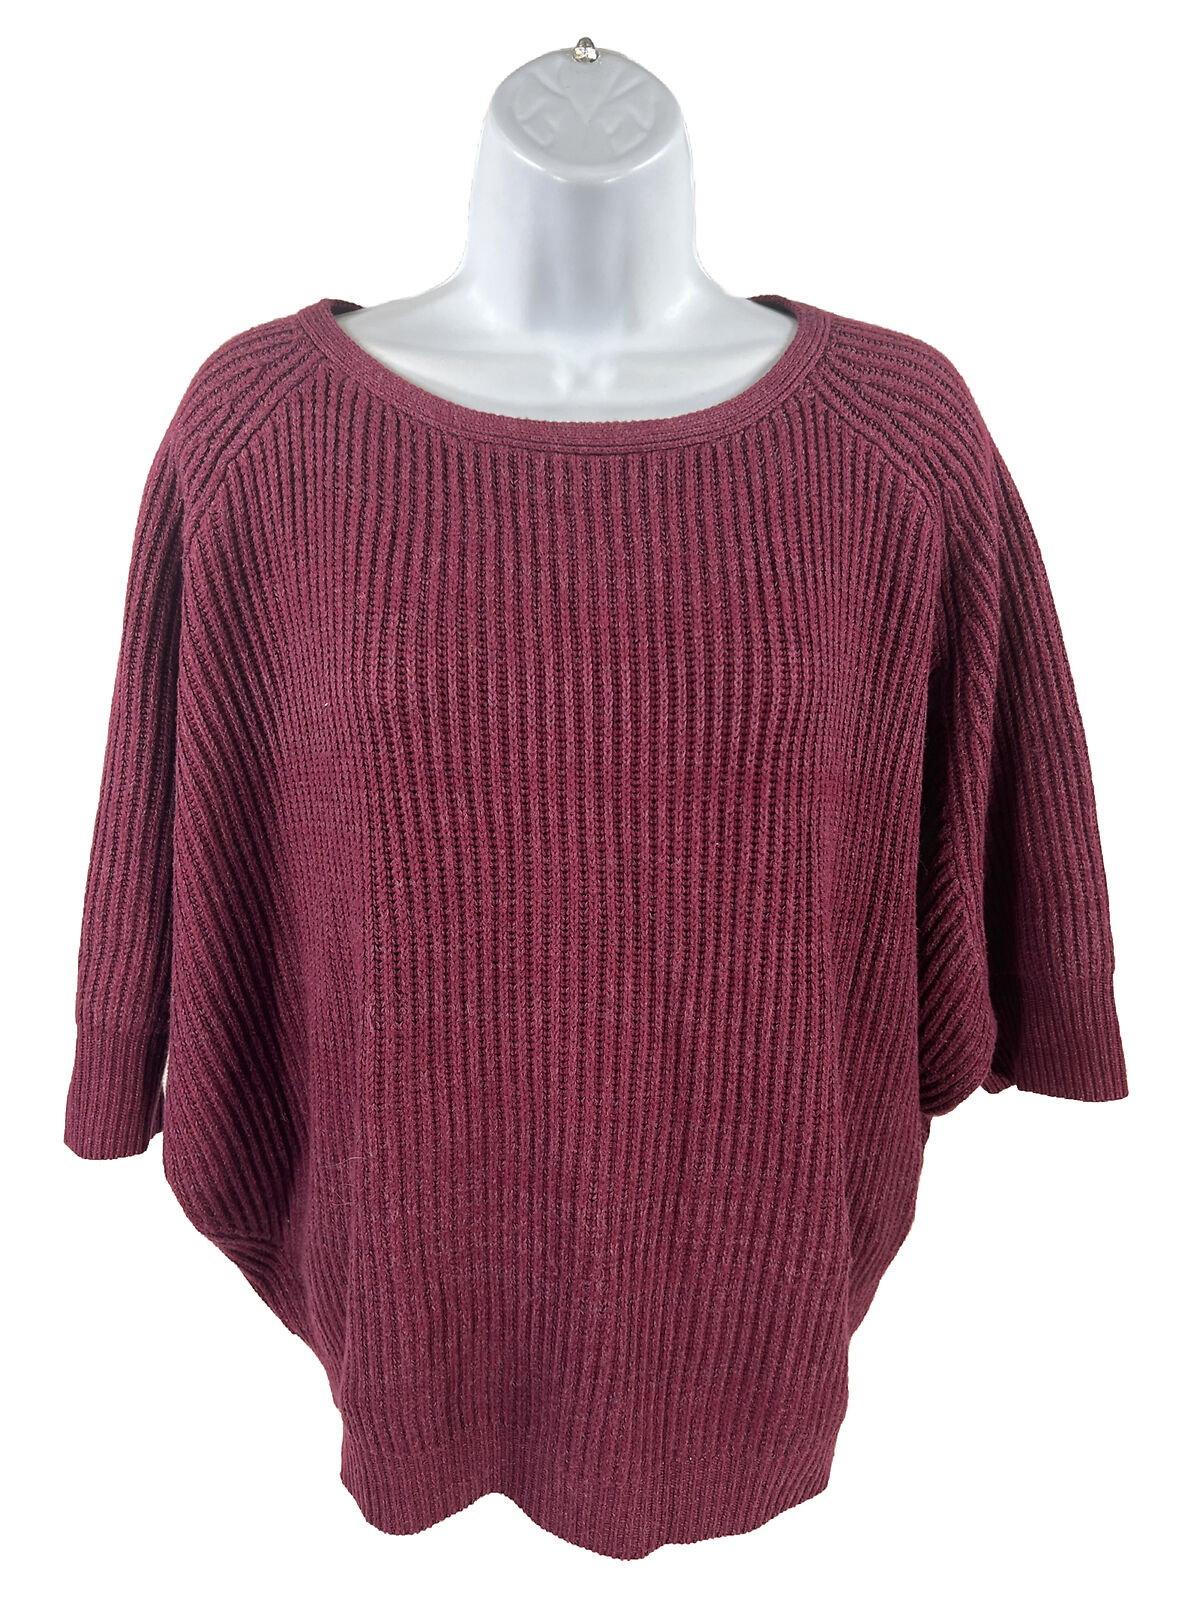 Chico's Suéter de punto con textura acanalada para mujer, color morado, 1/US M